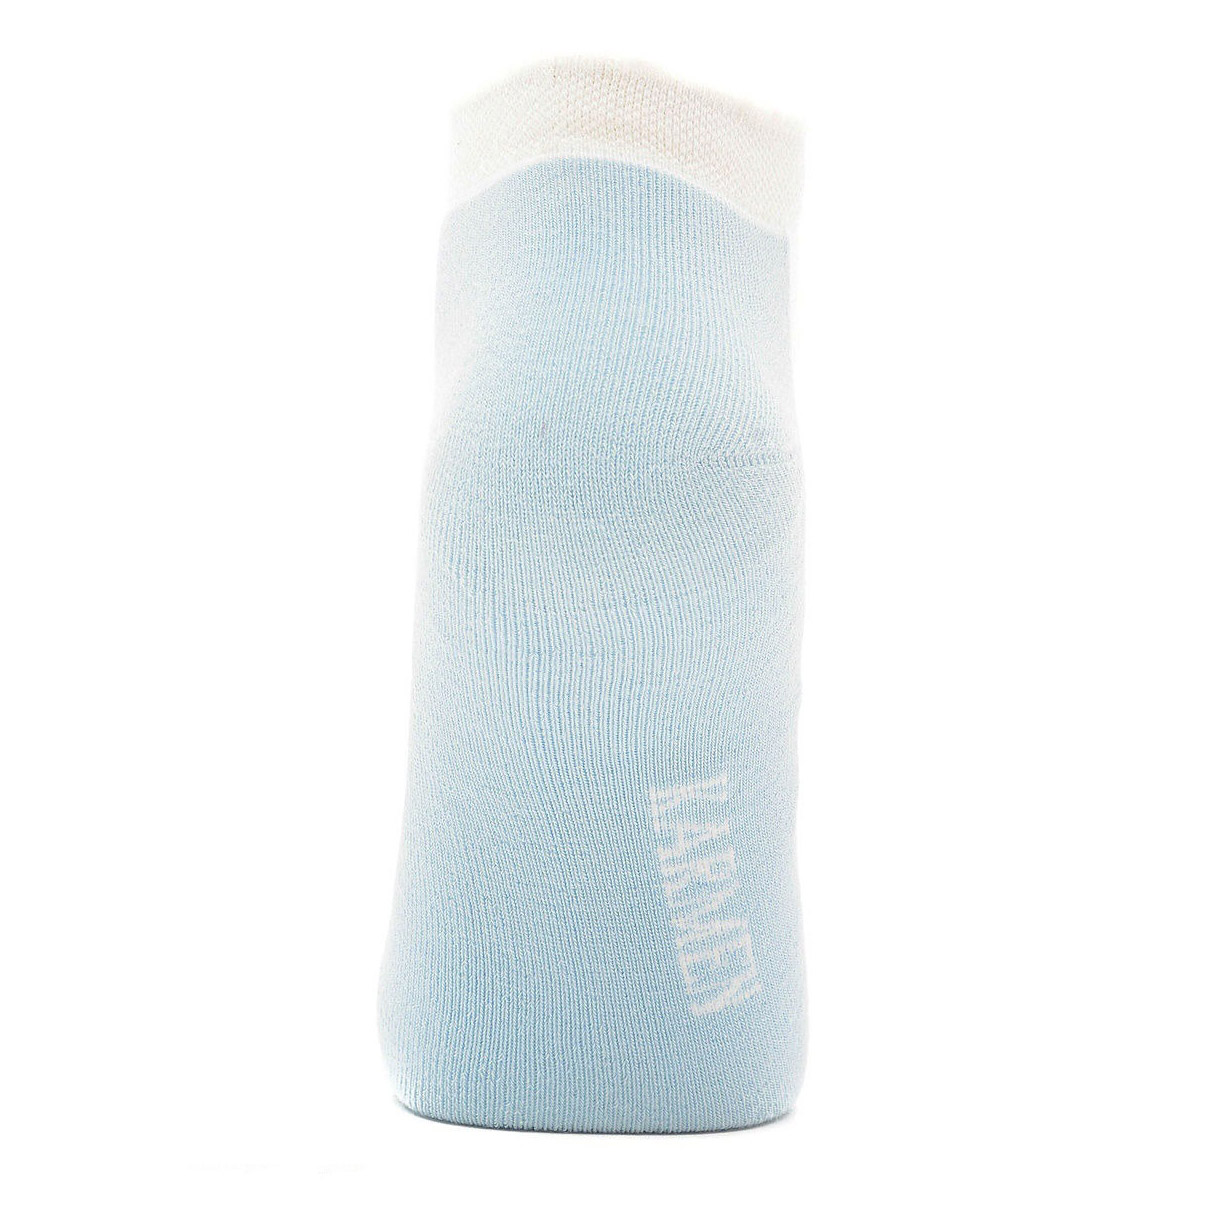 Носки Karmen MiniCalzaSport носки azzurro 1, цвет лазурный, размер 35-39 - фото 2